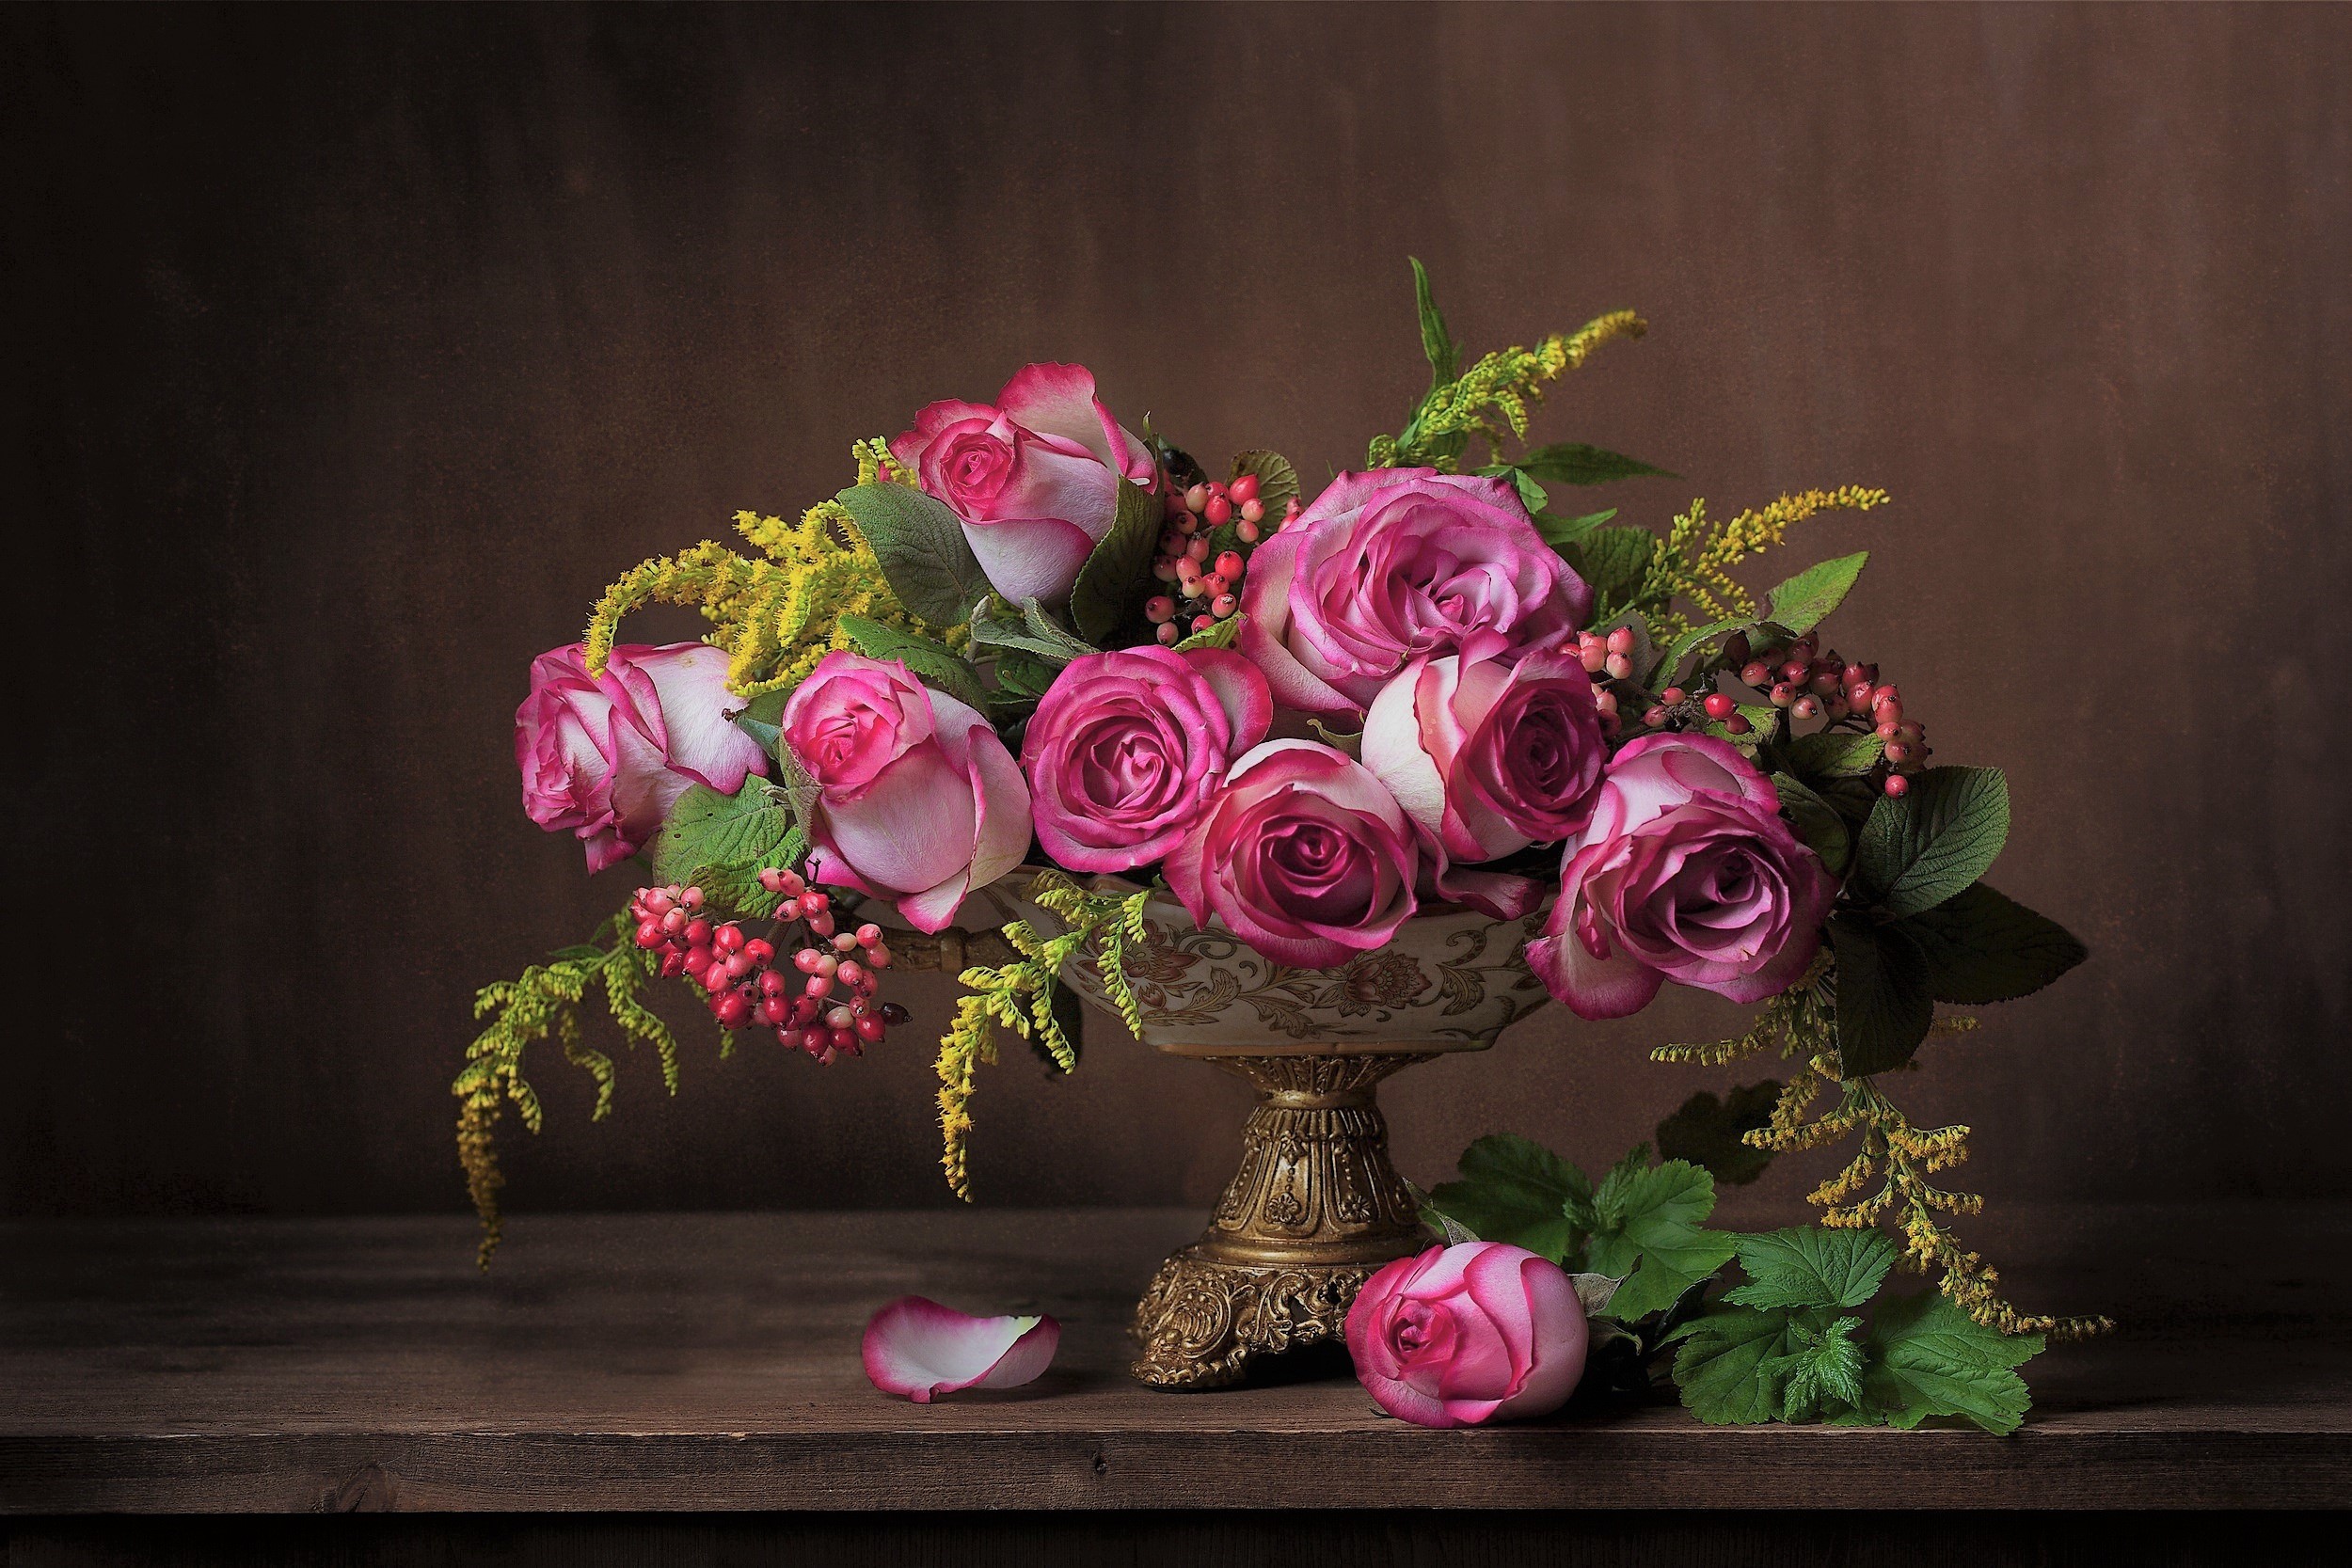 rose, photography, still life, bowl, flower, leaf, pink flower, vase